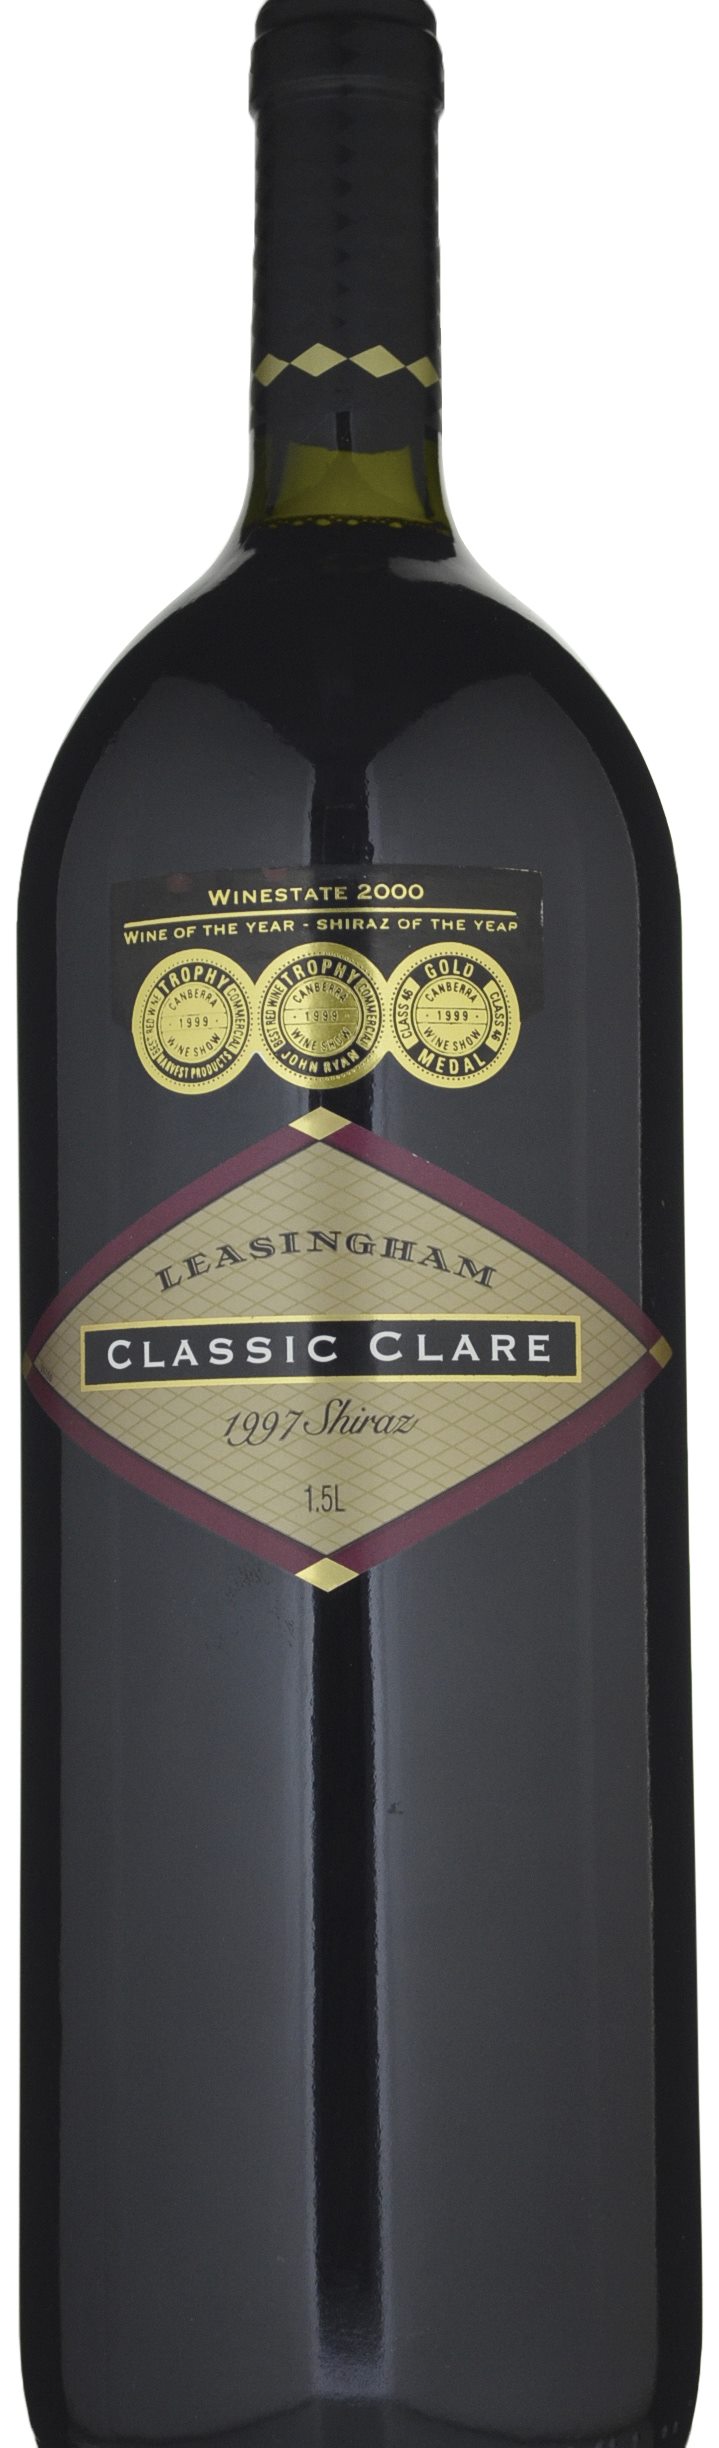 Leasingham Classic Clare Shiraz 1997